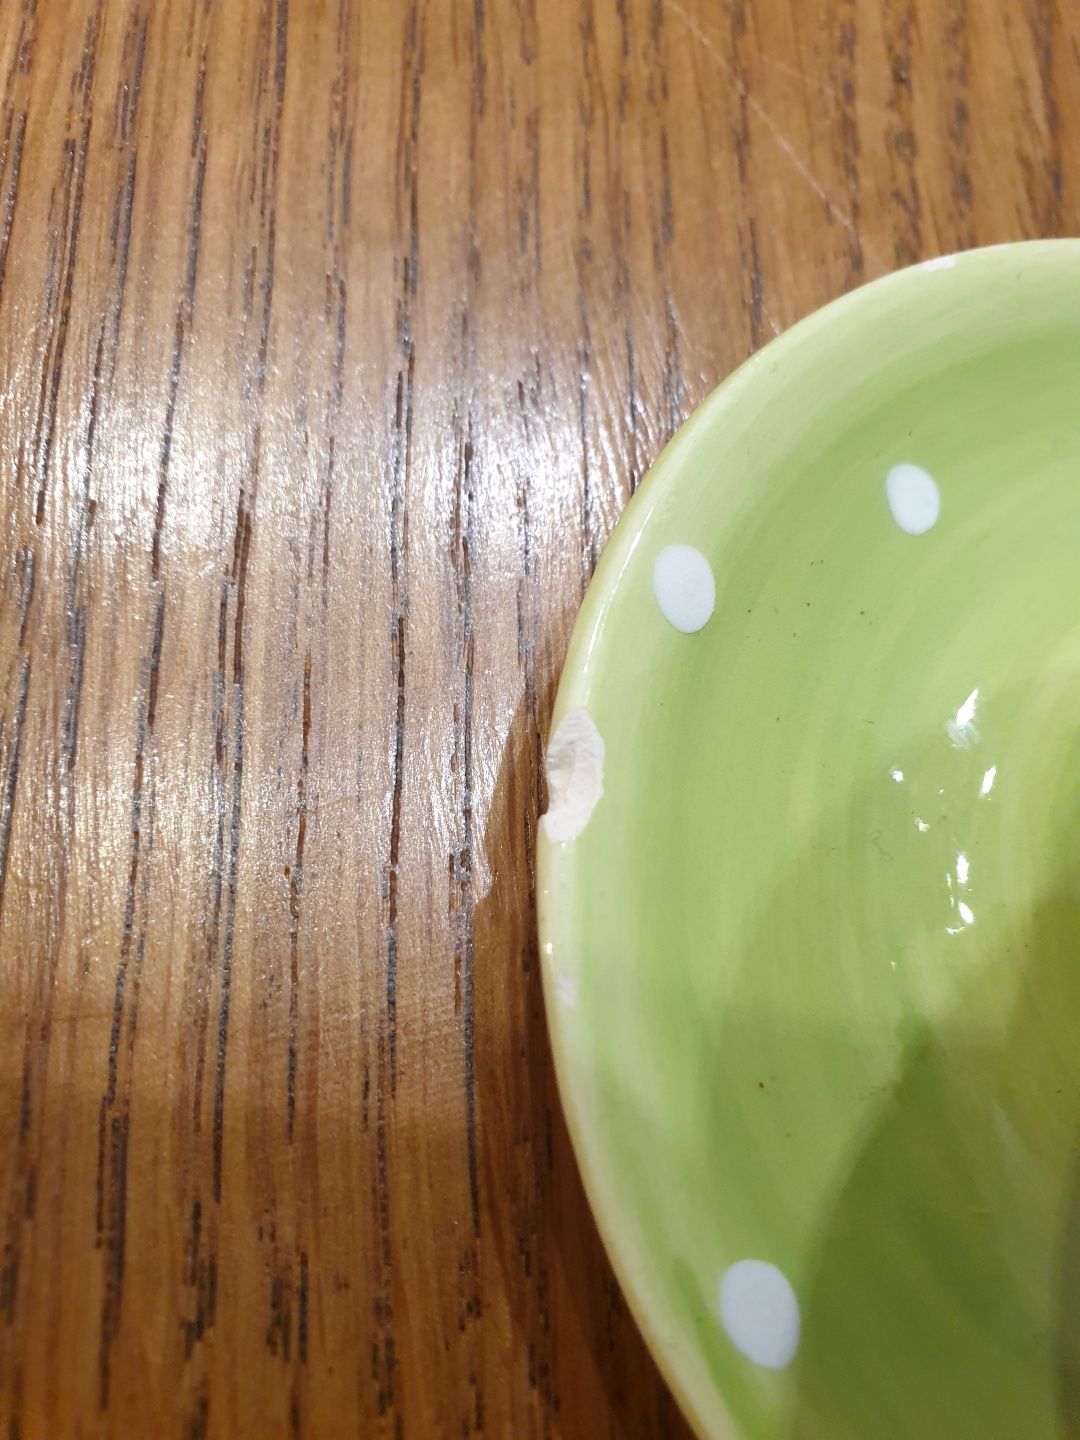 Zielona odstawka na jajko w białe kropki.